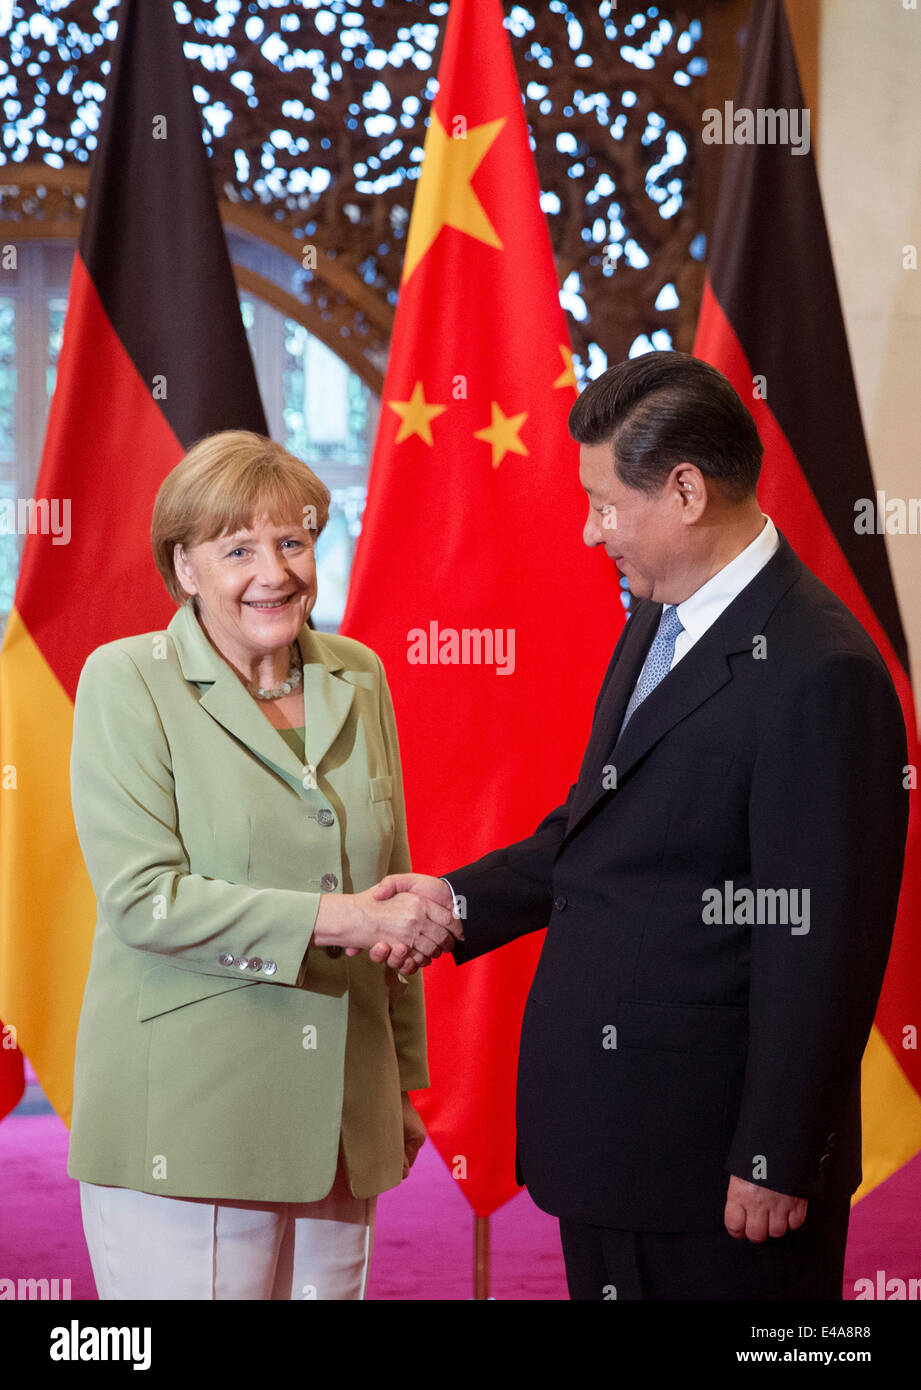 Pechino, Cina. 7 Luglio, 2014. Il cancelliere tedesco Angela Merkel, (L), e il presidente cinese Xi Jinping agitare le mani prima di un incontro presso il Diaoyutai State Guesthouse a Pechino in Cina 07 luglio 2014. Merkel è su una tre giorni di visita in Cina e si prevede di tenere colloqui con funzionari cinesi a rafforzare i legami tra i due paesi. Foto: KAY NIETFELD/dpa/Alamy Live News Foto Stock